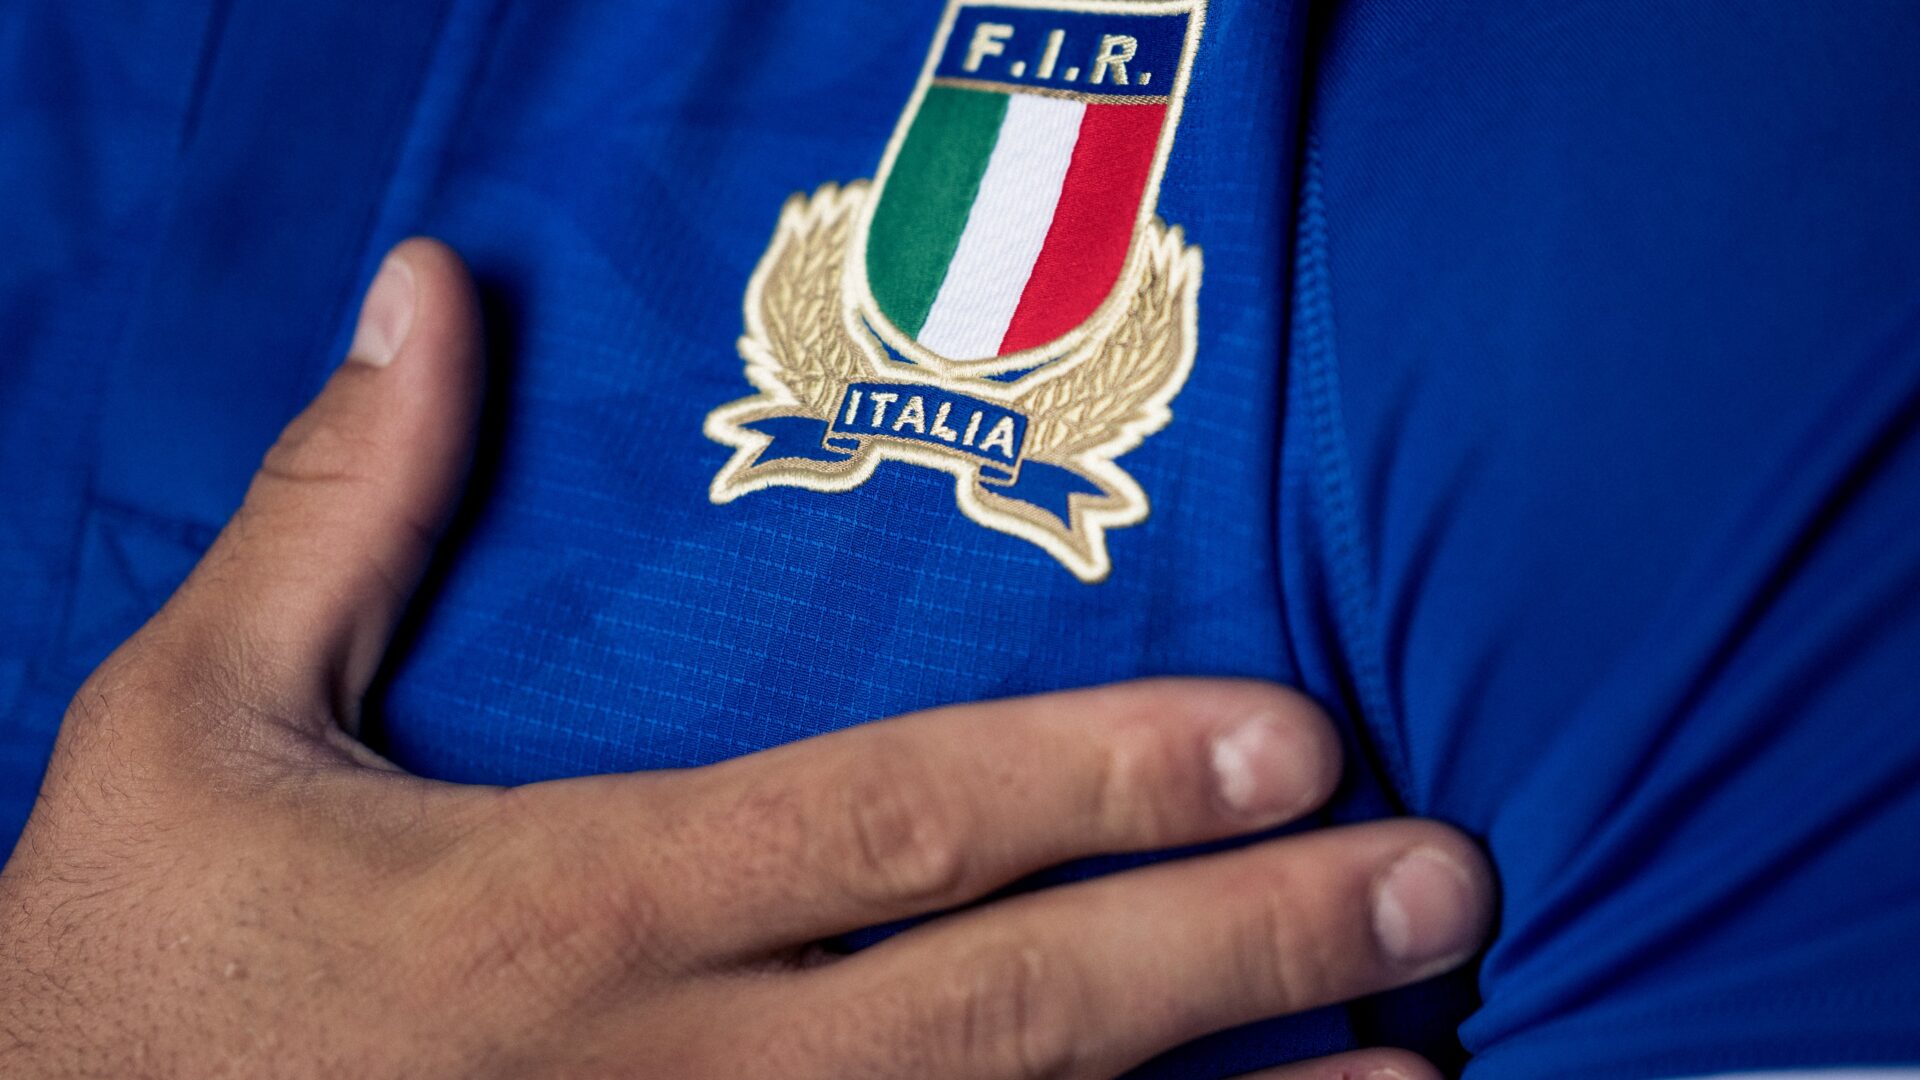 Itália rugby seis nações